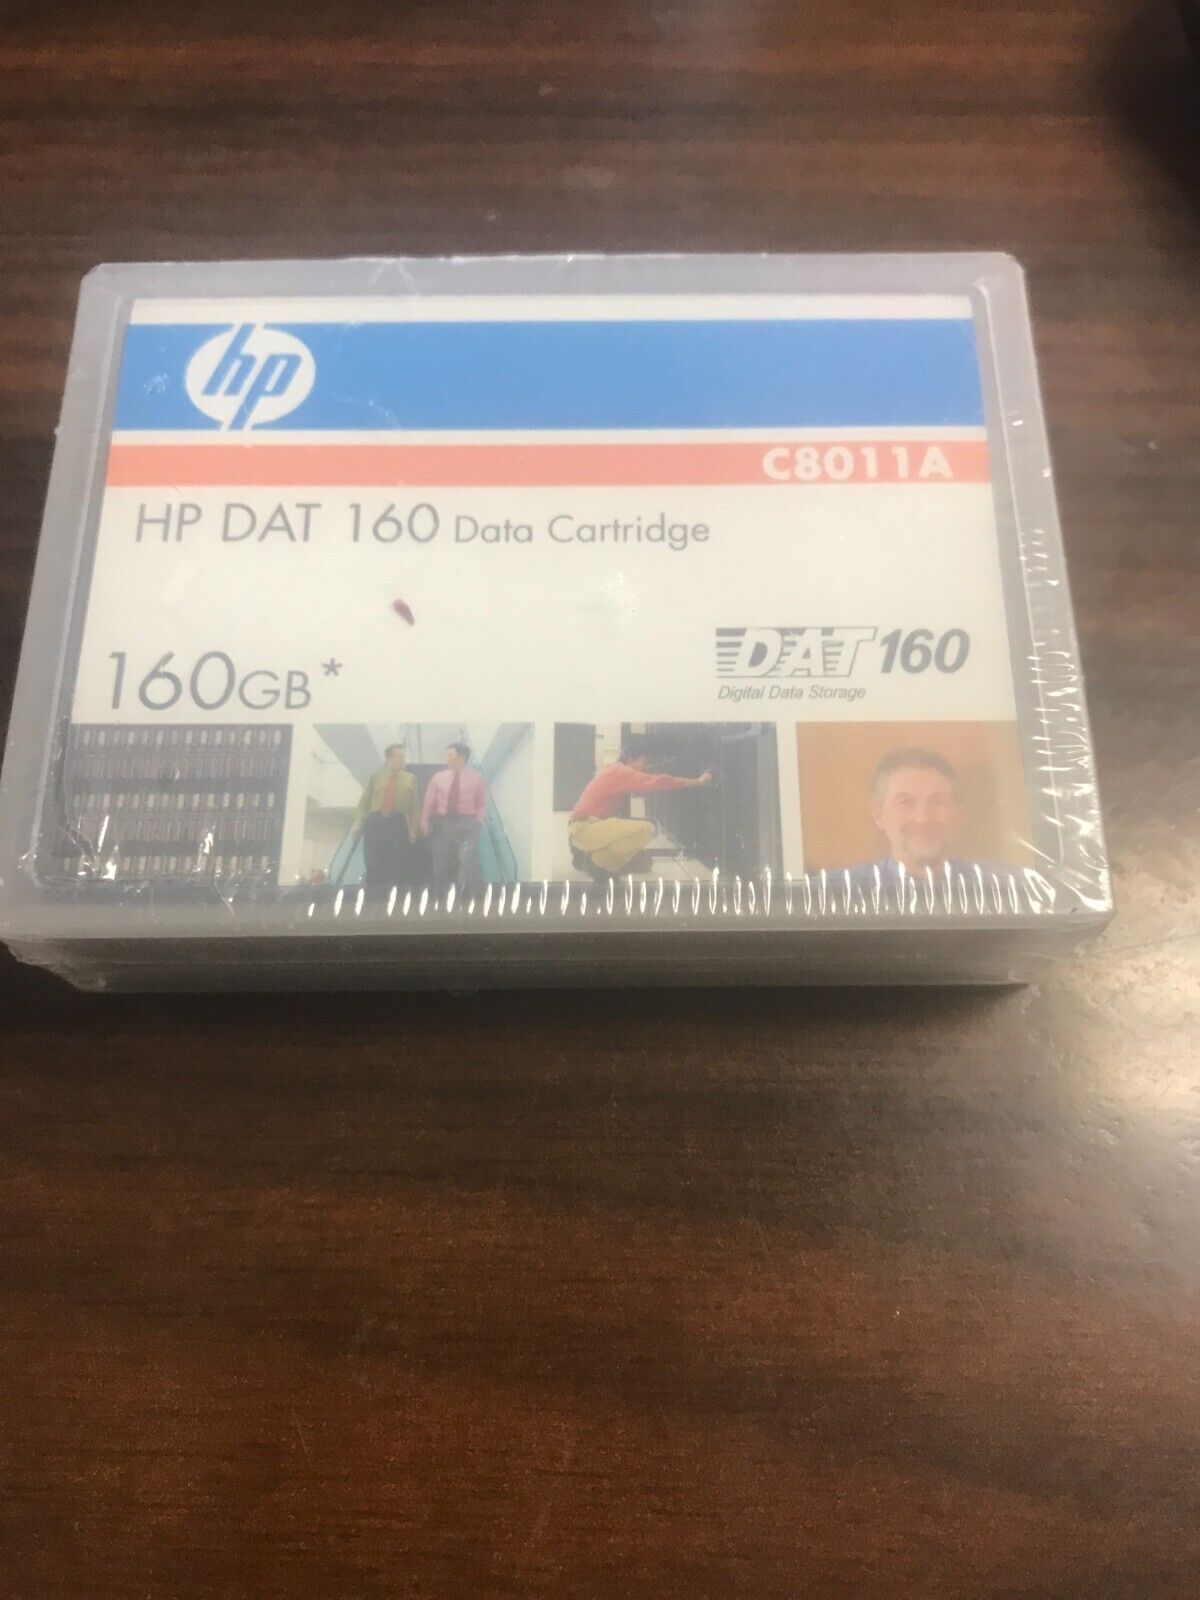 HP Digital Data Storage DAT160 160GB Data Tape Media C8011A